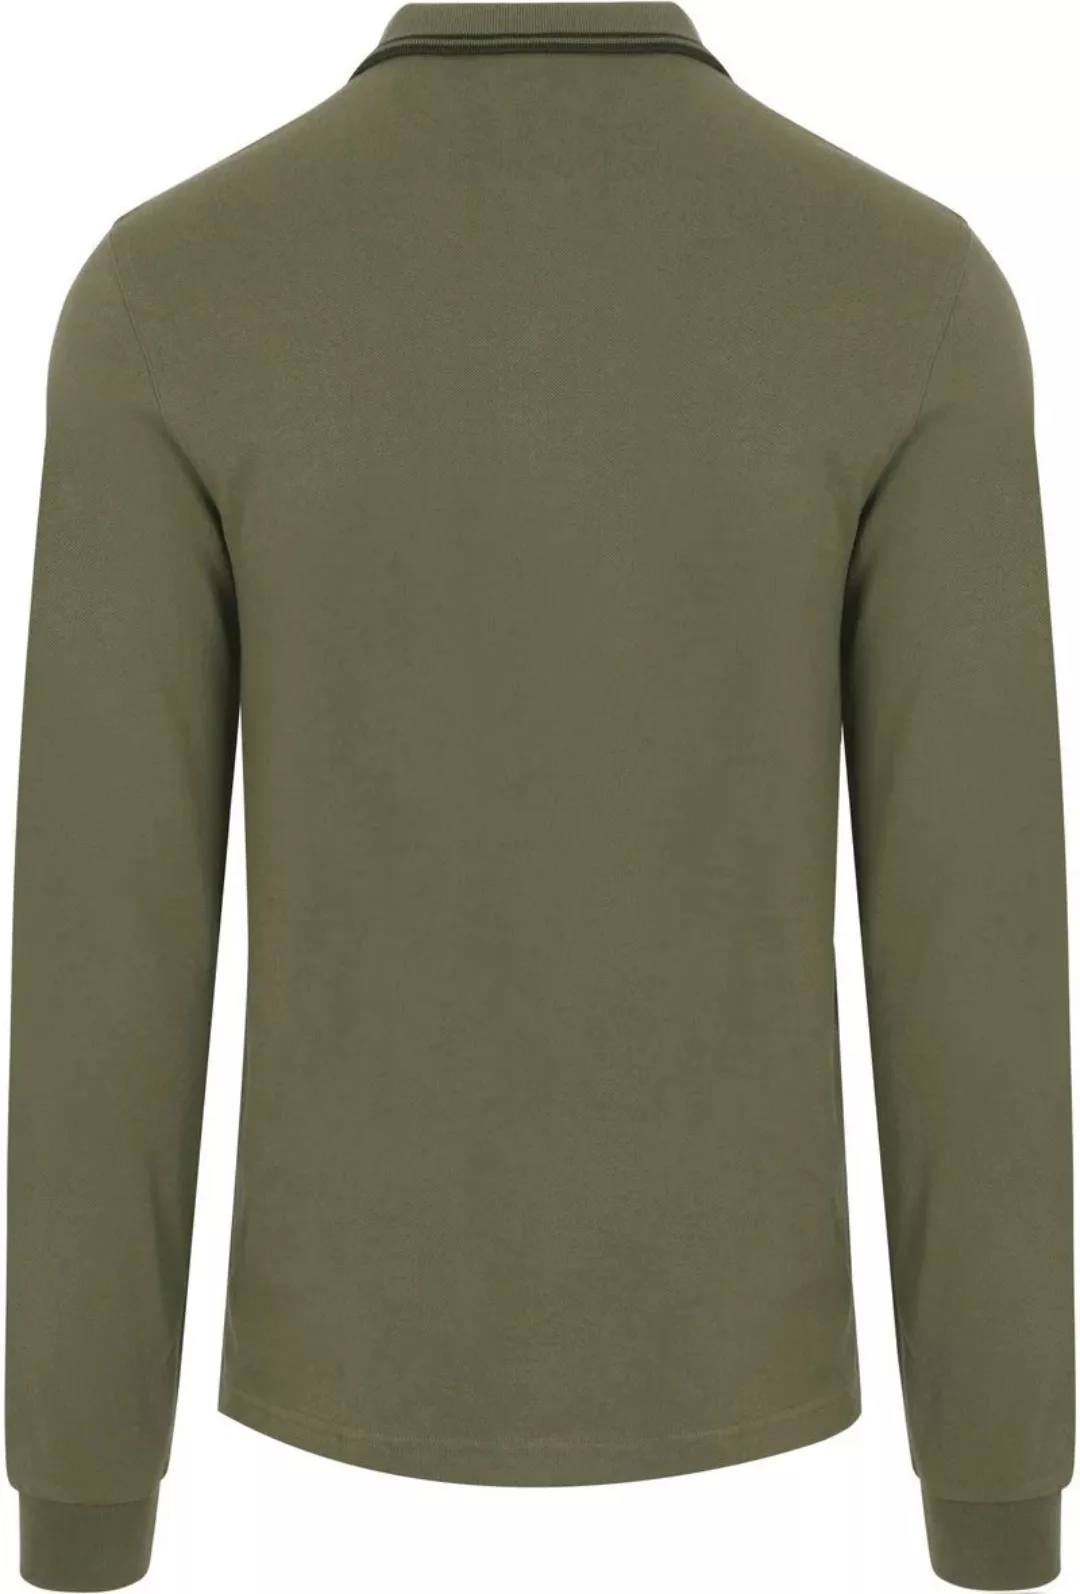 Fred Perry Langarm-Poloshirt Grün W49 - Größe M günstig online kaufen